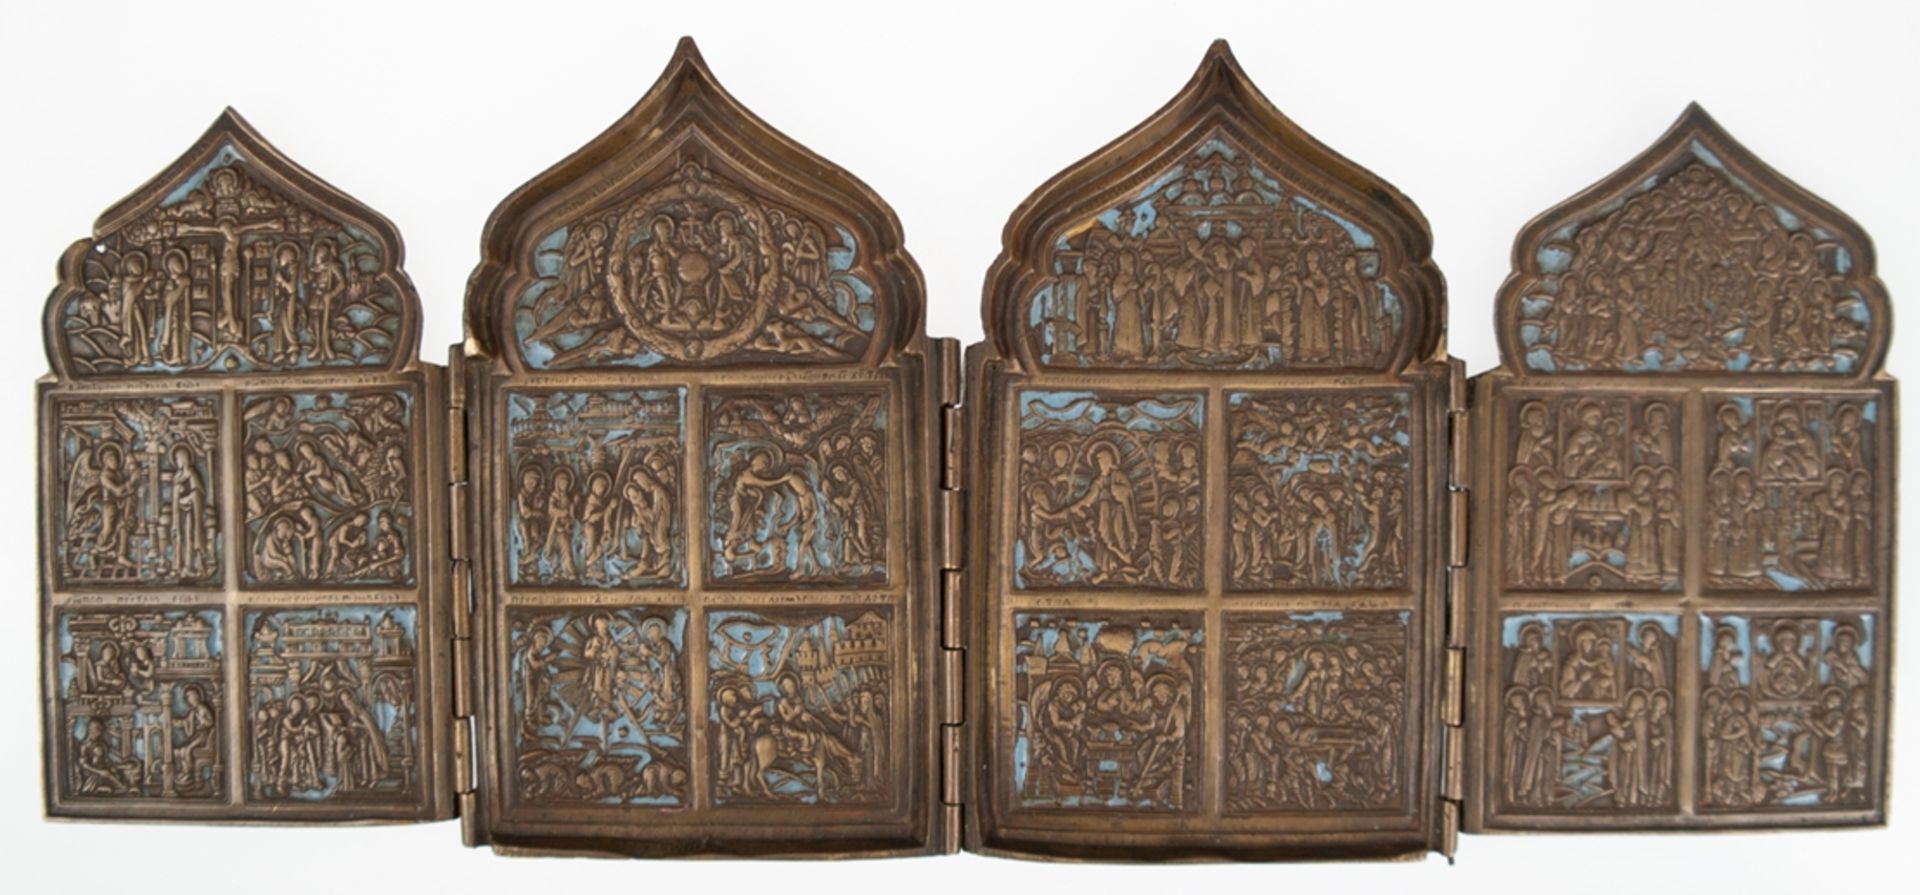 Reiseikone, Bronze z.T. emailliert, 19. Jh., Tetraptychon, 4-flügelig, klappbar, ges. 17x40,5 cm